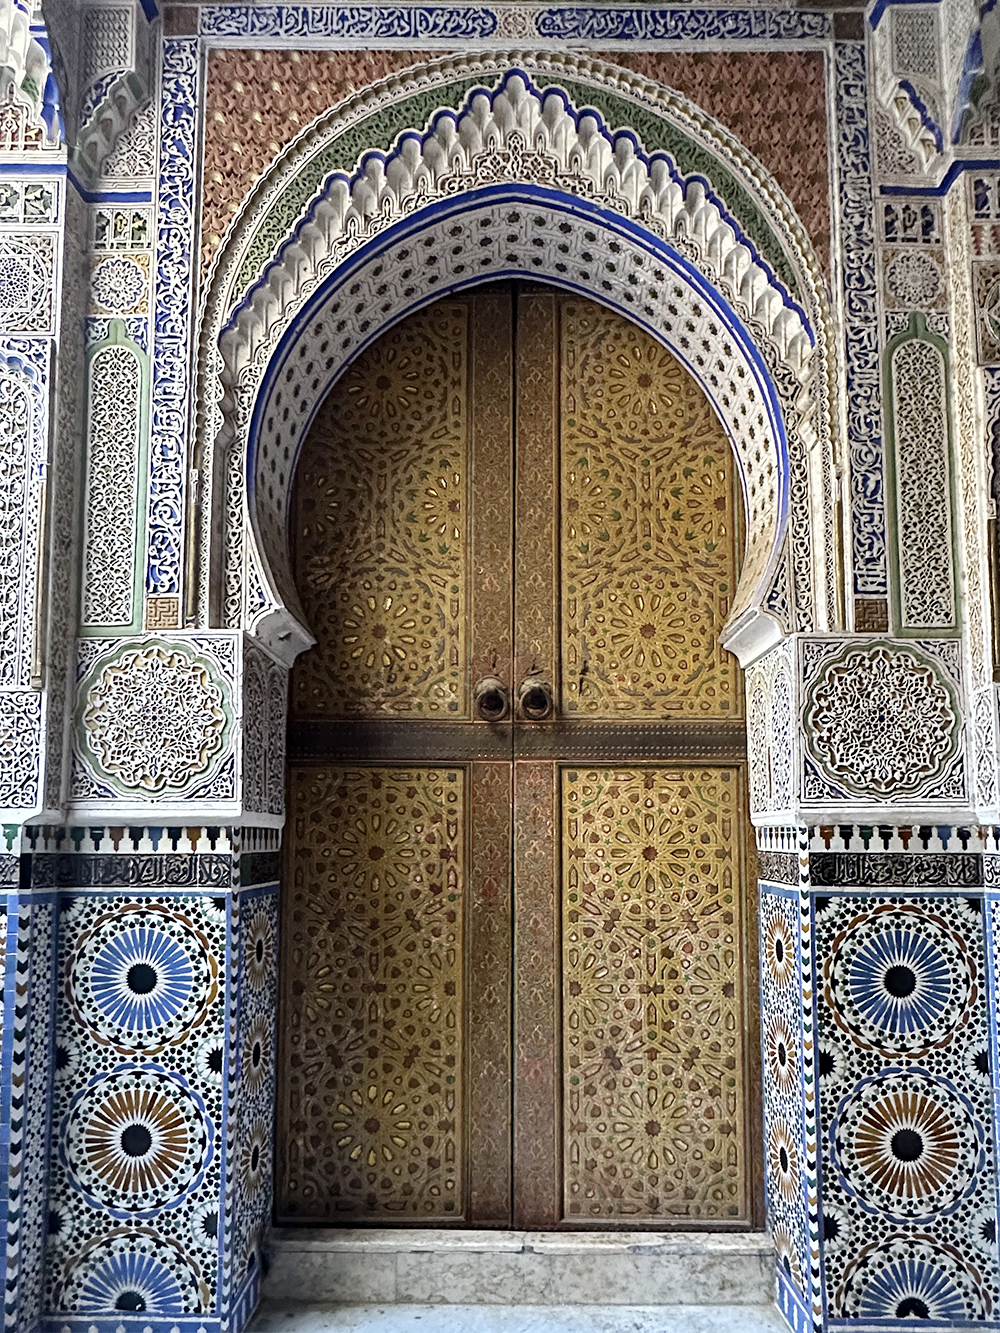 Главные достопримечательности в медине, историческом центре городов в Марокко, — мечети, но вход туда разрешен только мусульманам